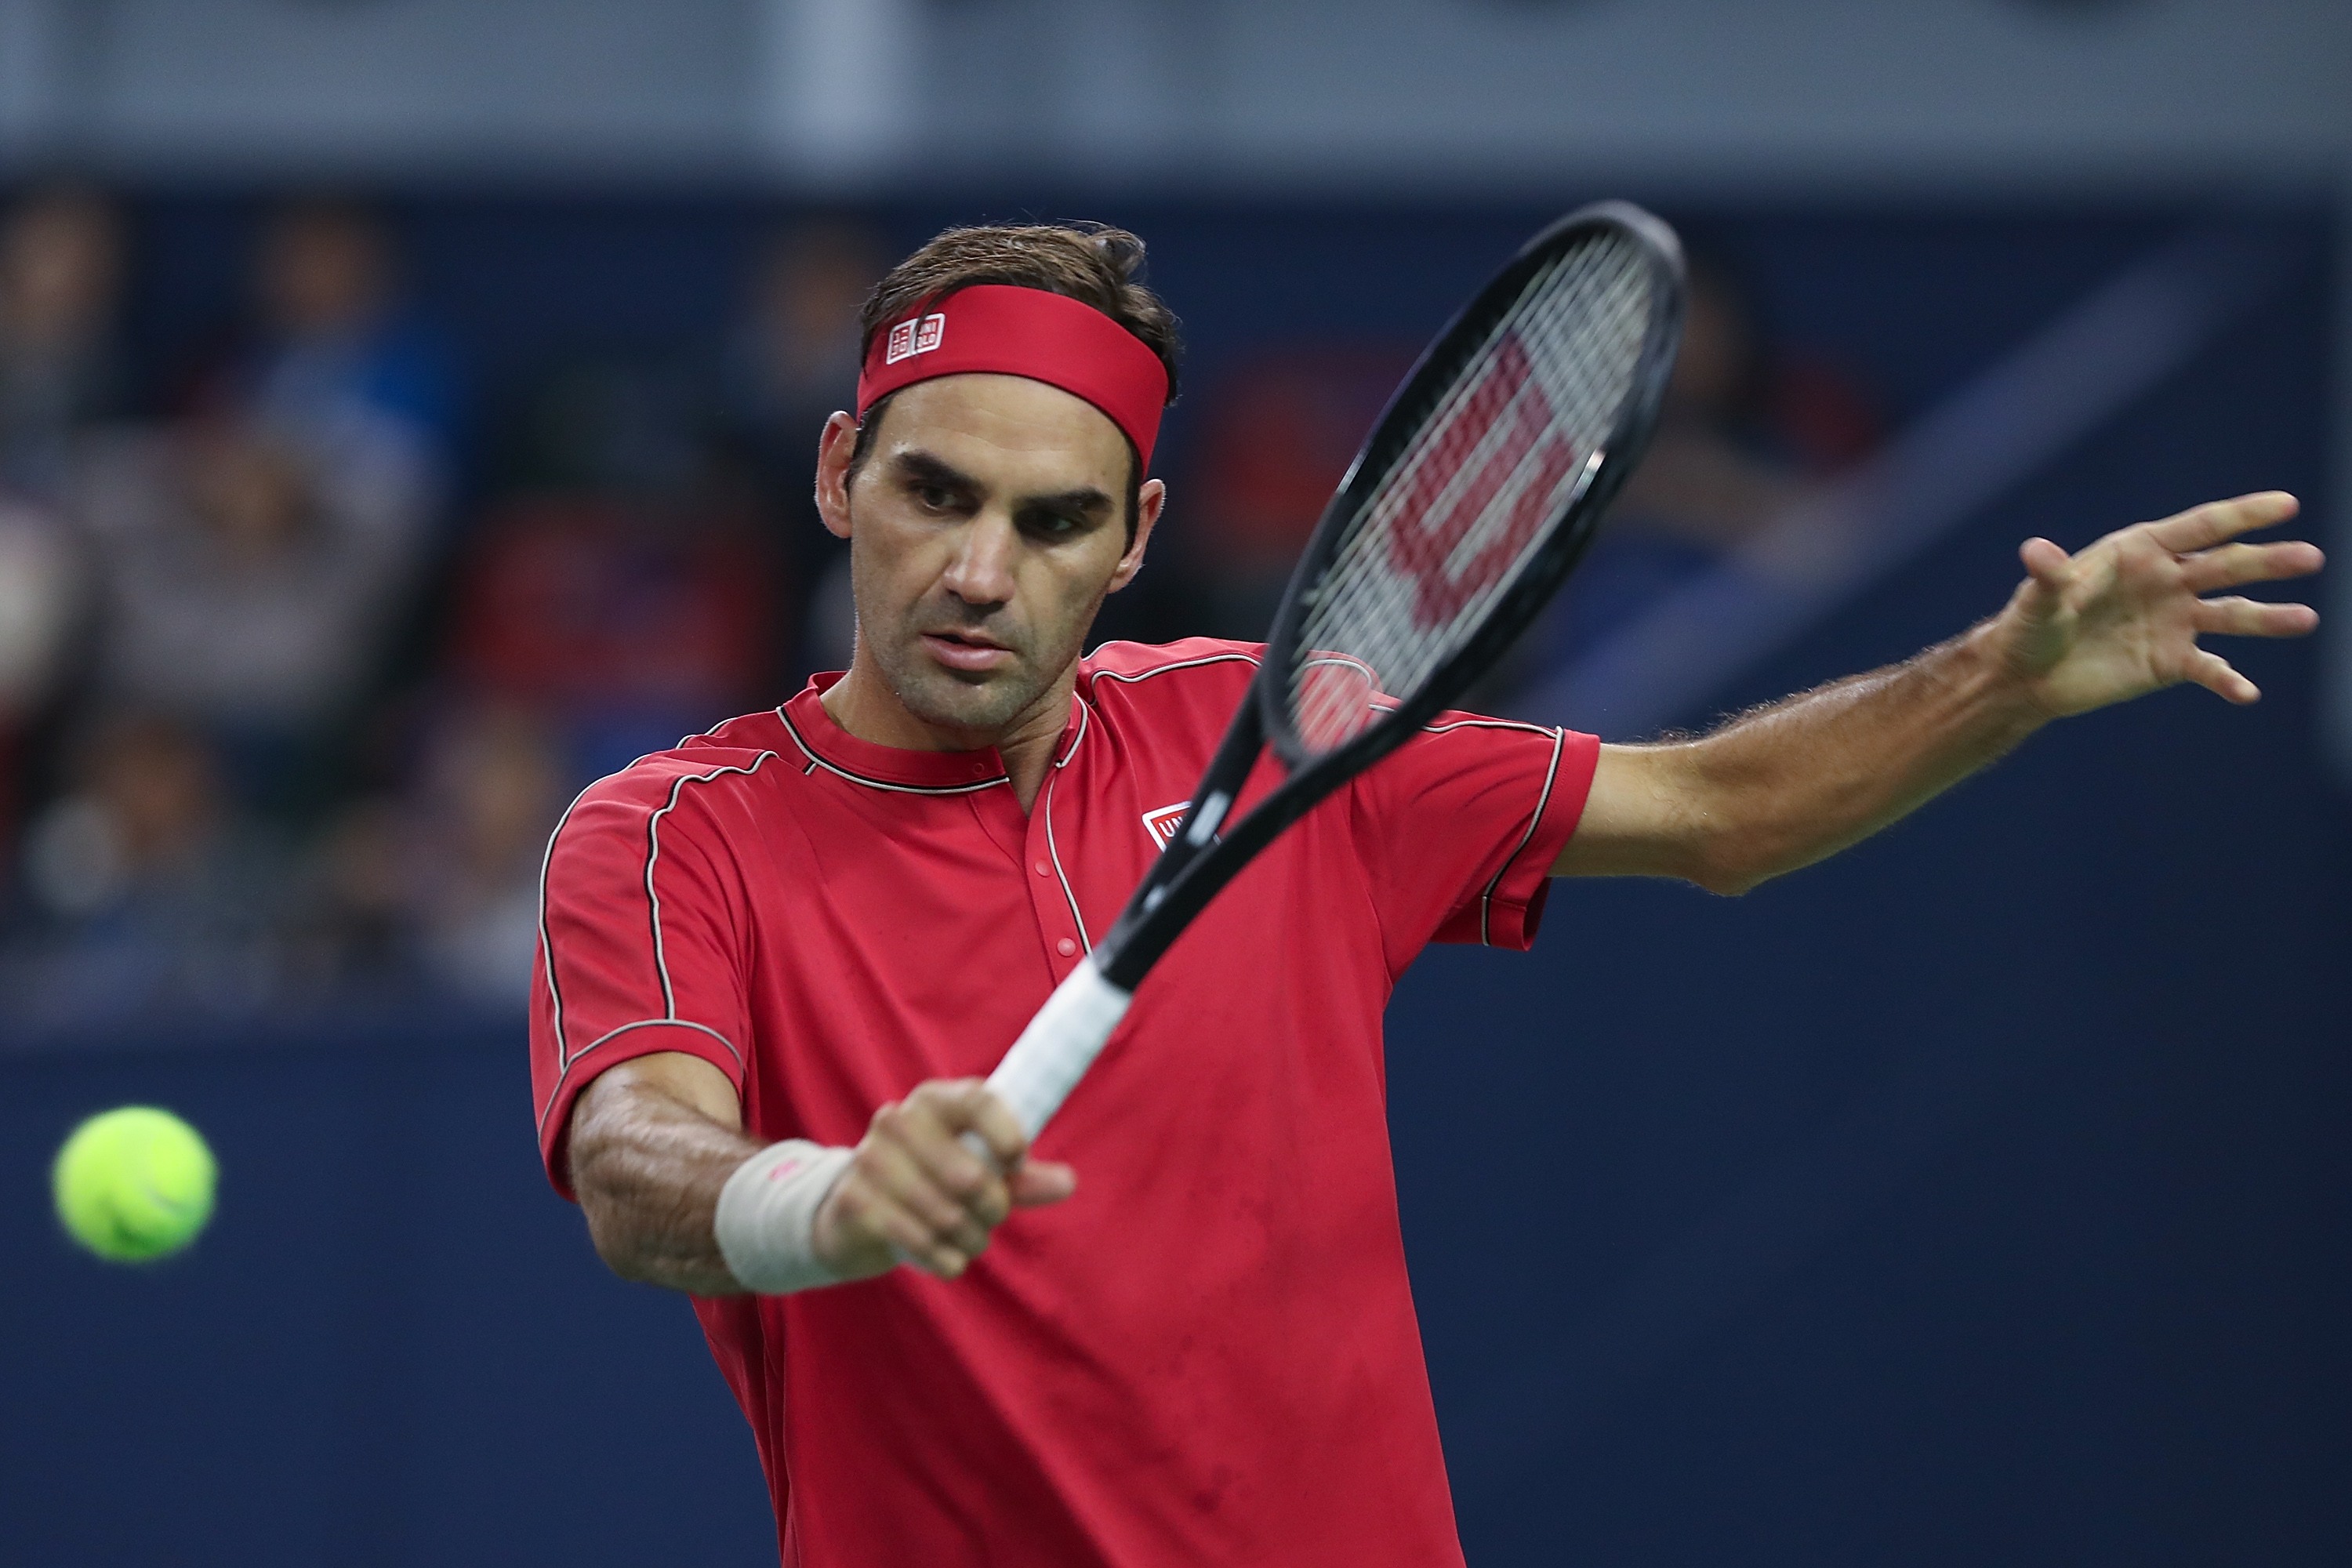 Simuler kandidatgrad makker Roger Federer to begin hunt for 10th title in Basel against qualifier